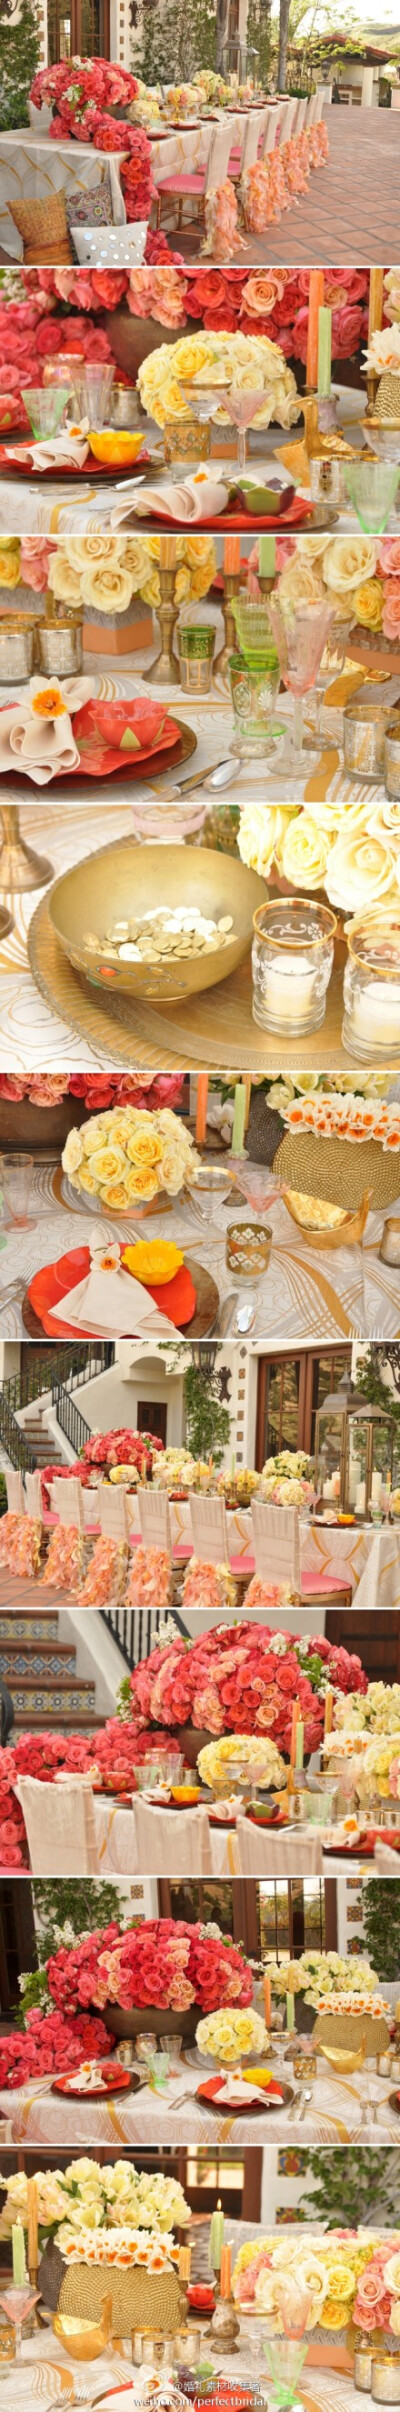 粉红色和浅黄色鲜花堆砌的婚礼餐桌